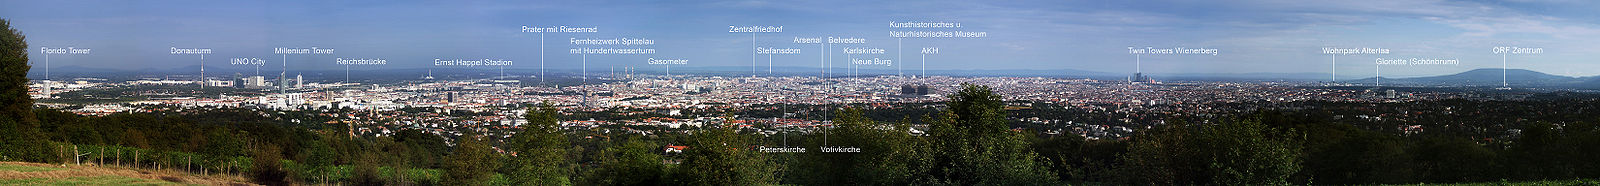 Panorama von Wien vom "Himmel" aus gesehen (2005)